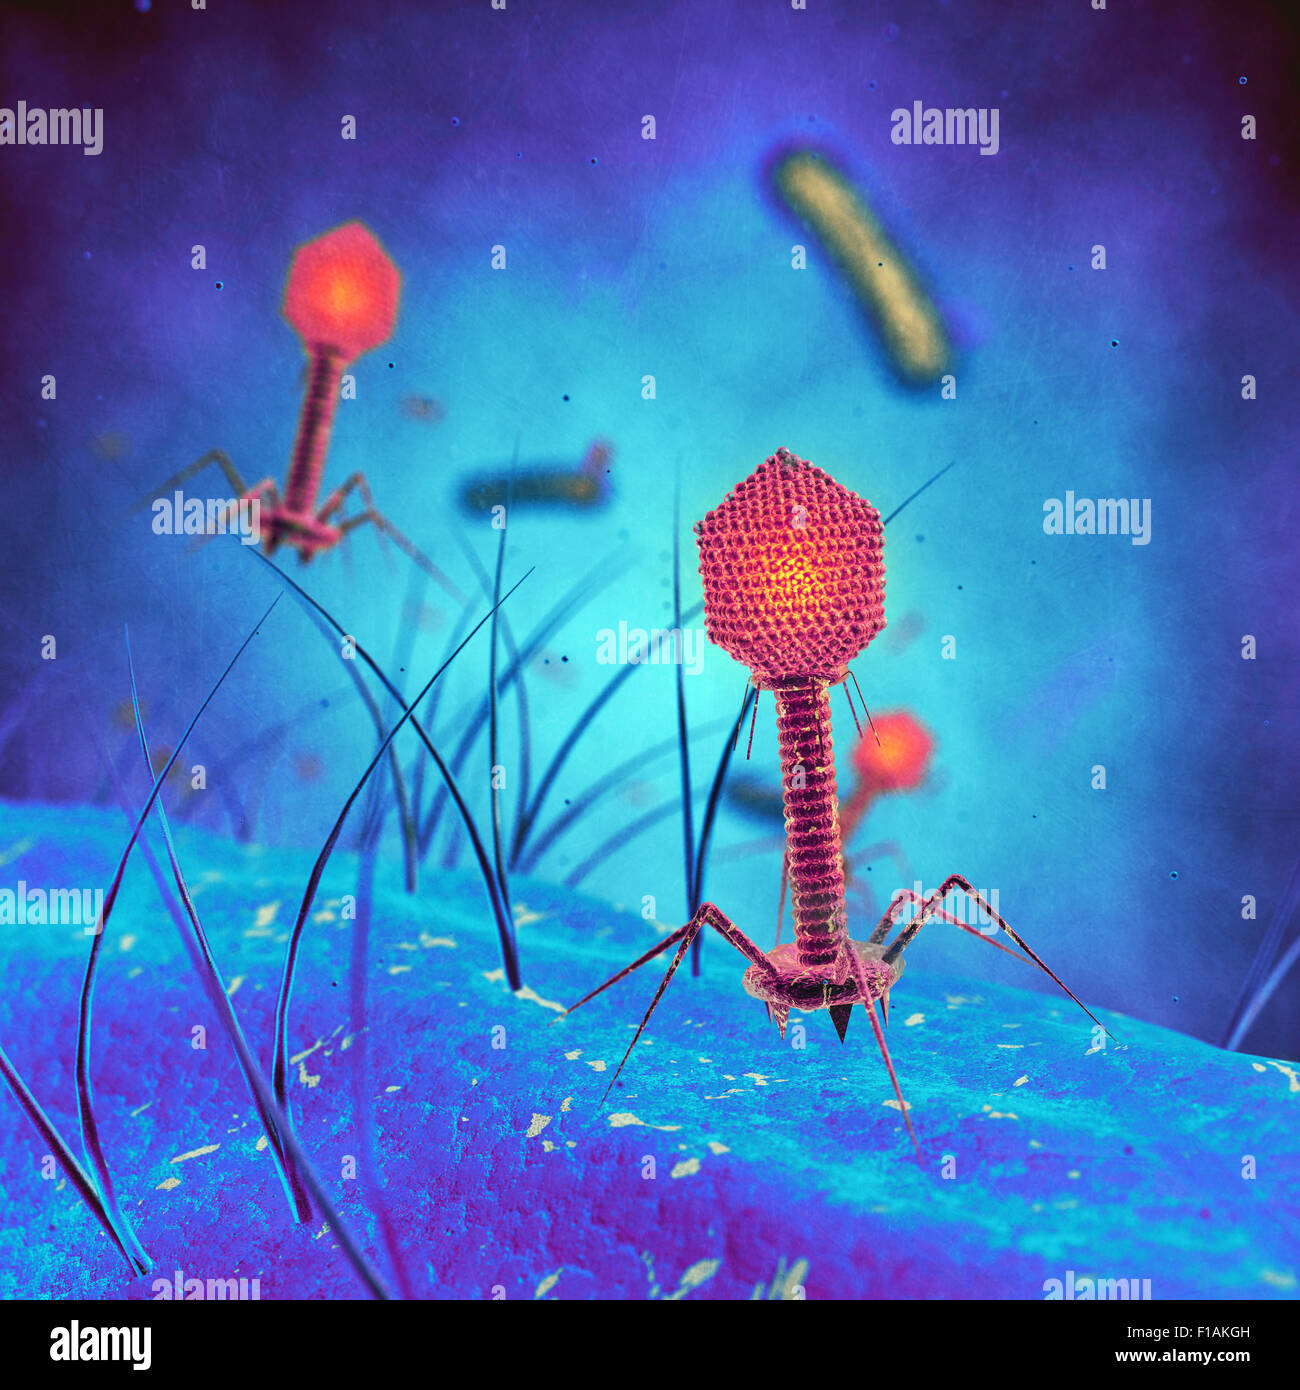 Bakteriophagen-Viren infizieren Bakterienzellen Stockfoto